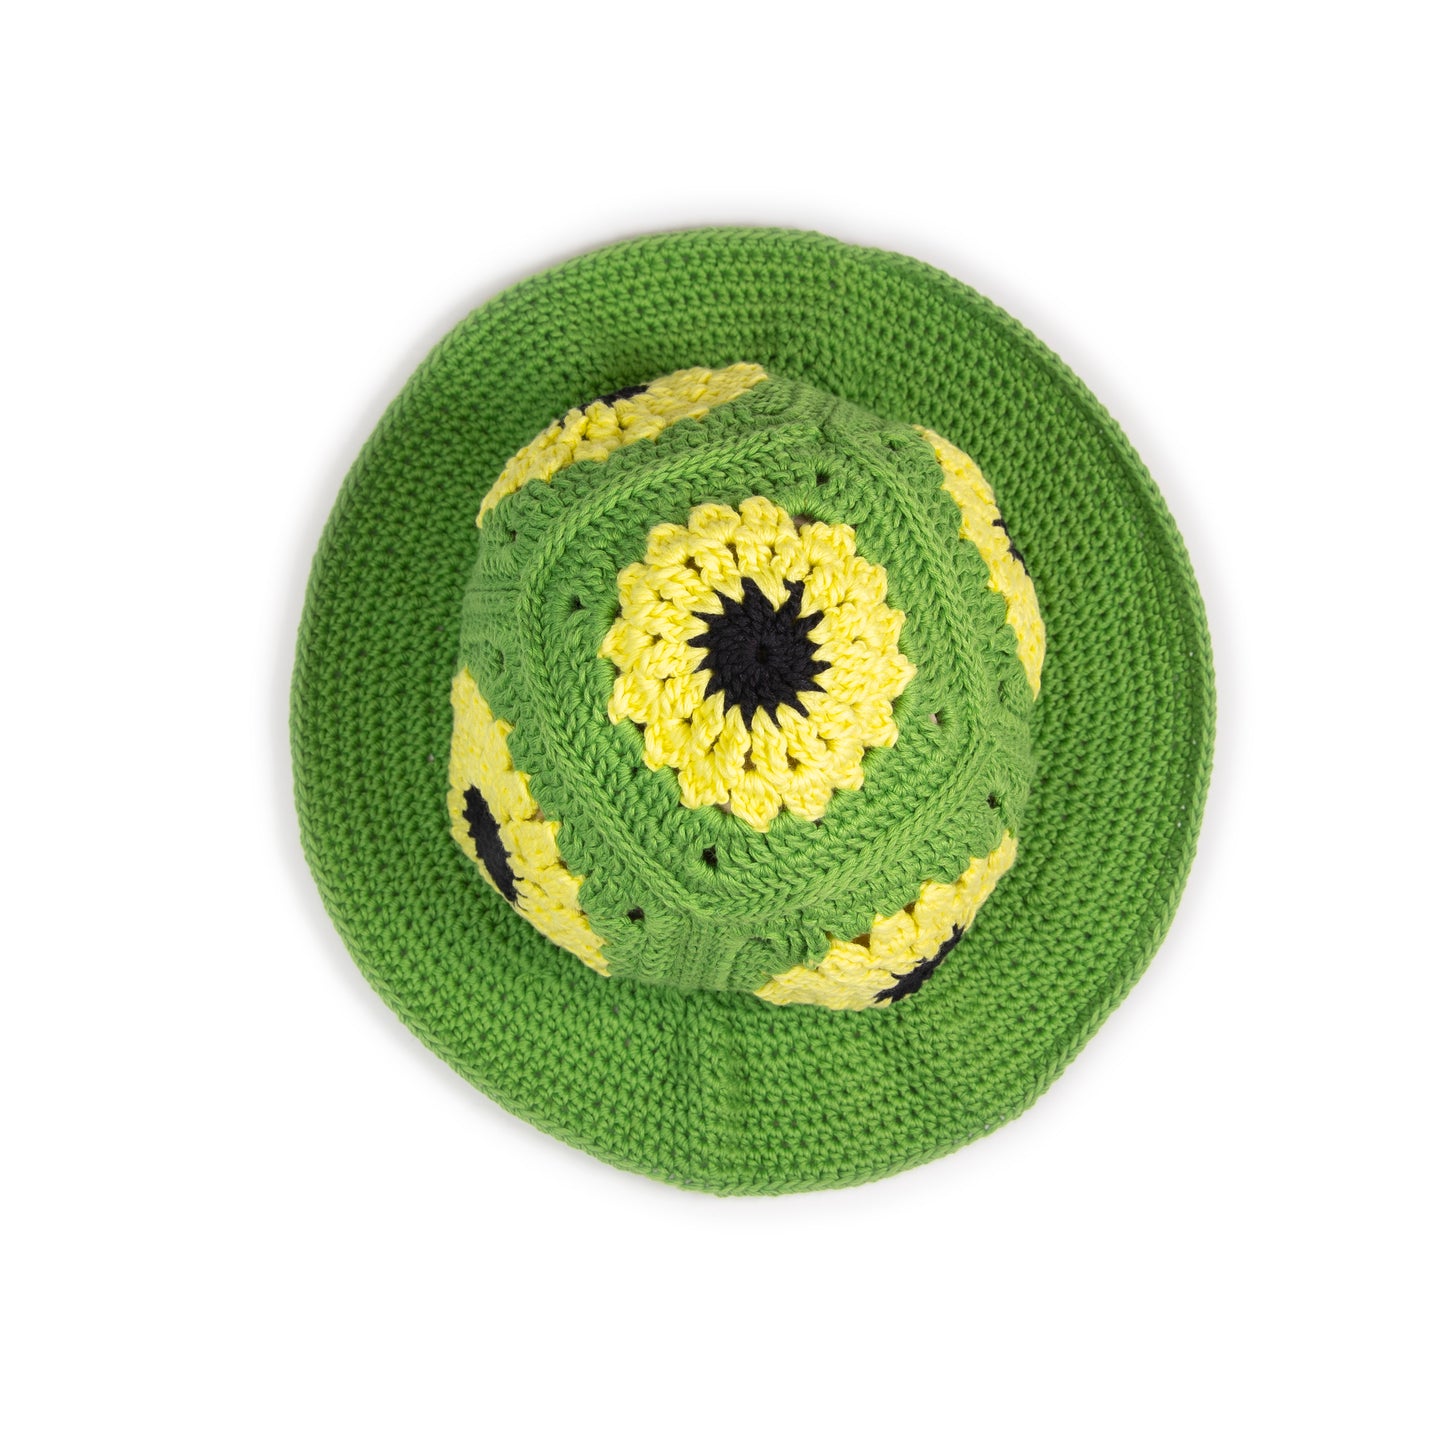 Sunflower crochet hat